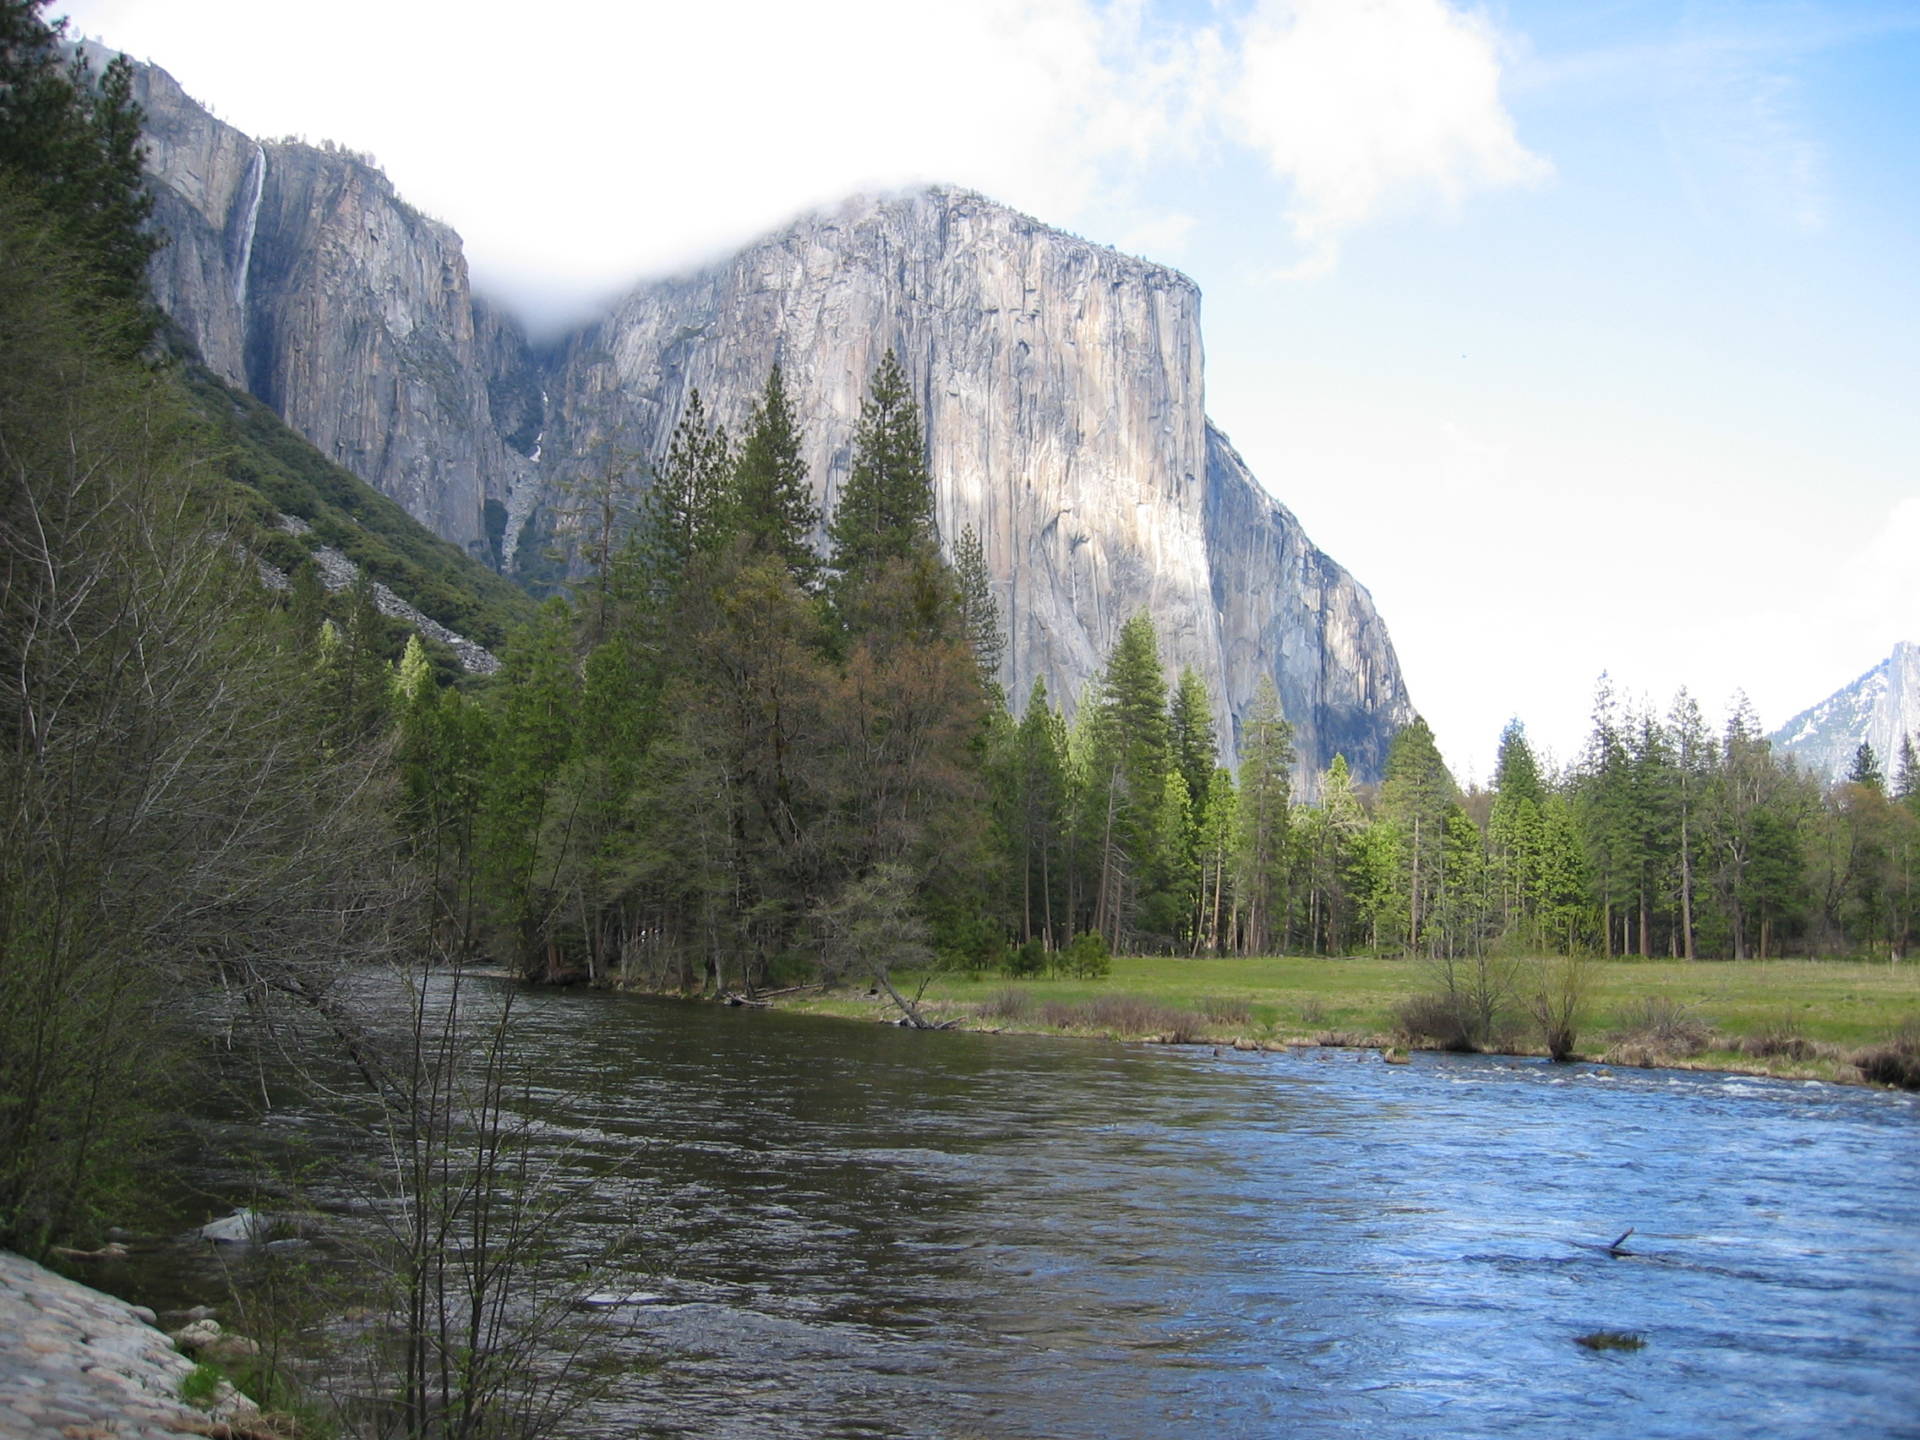 El Capitan in Yosemite National Park Craig Miller/KQED